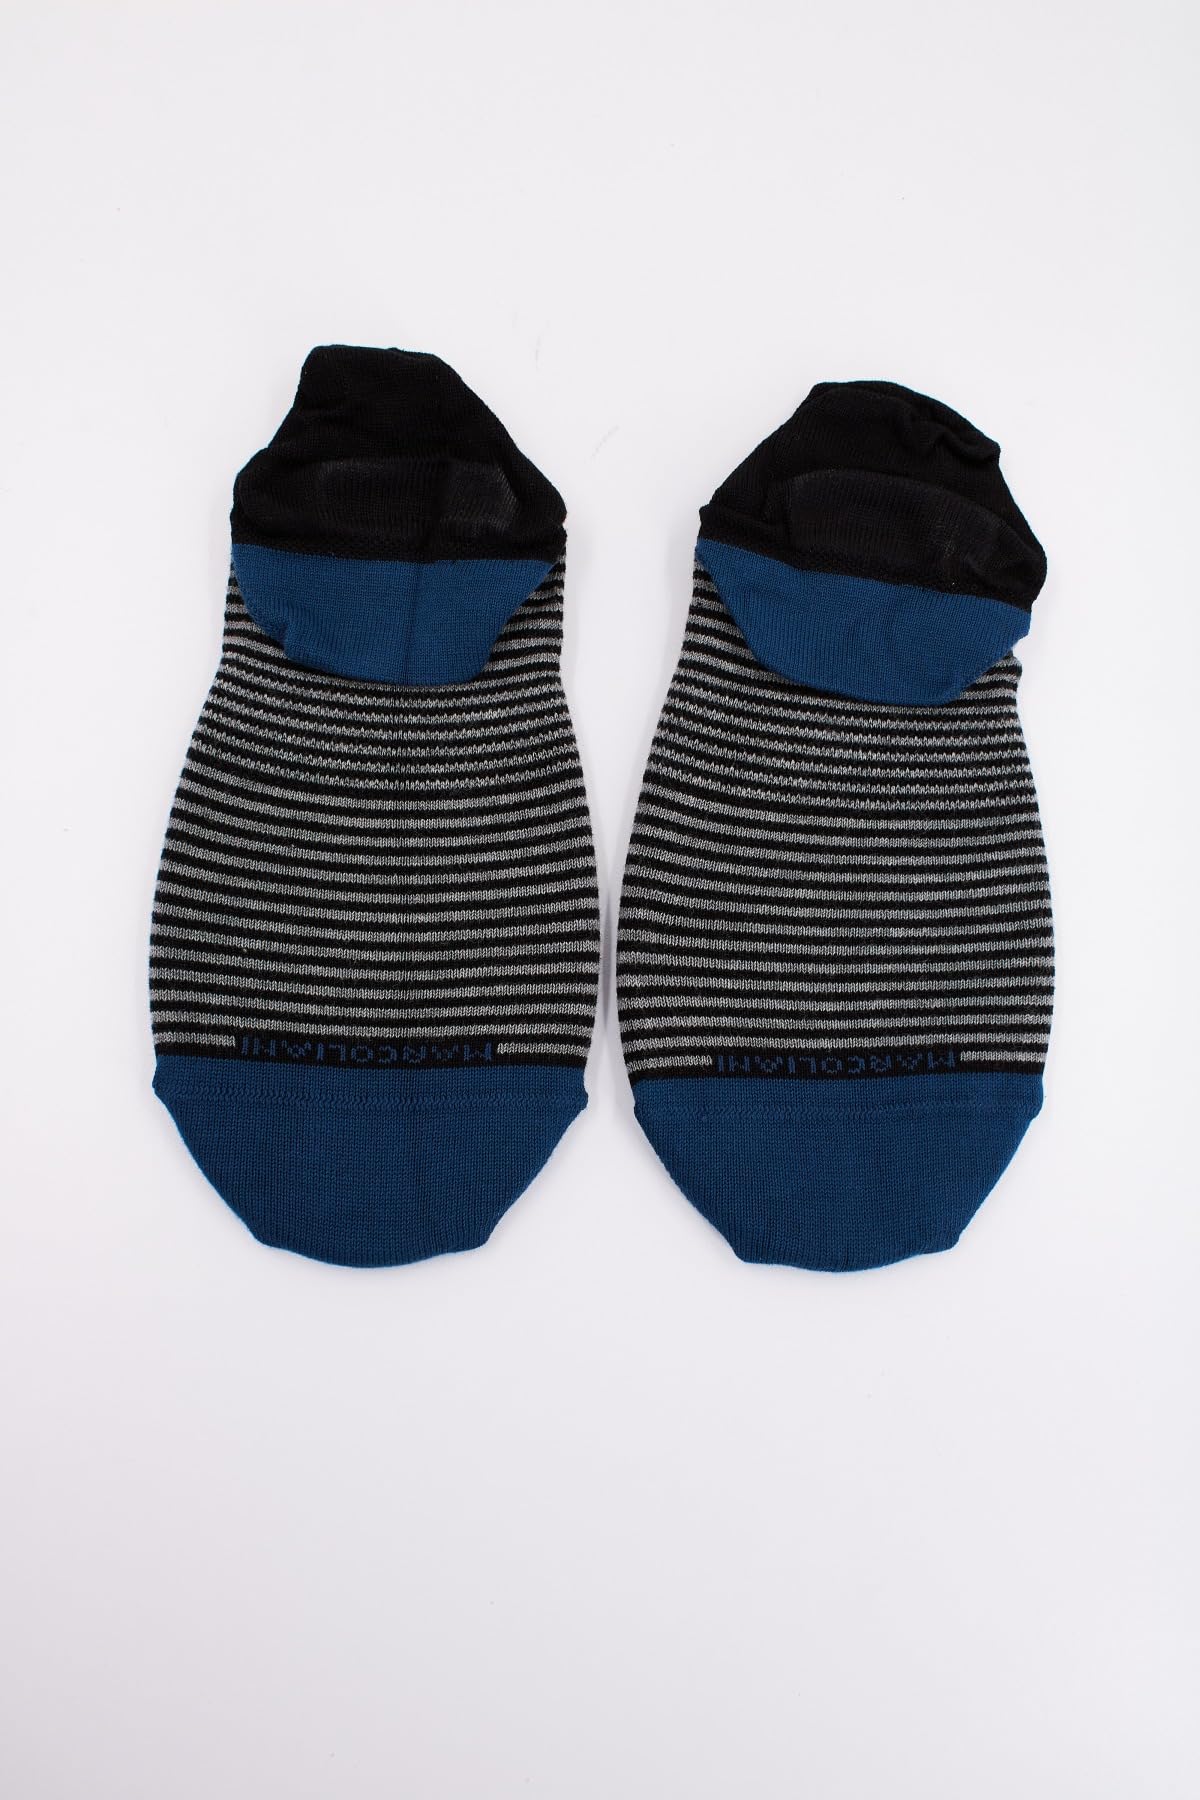 Marcoliani Milano Mens Invisible Touch No Show Pima Cotton Stripe Sneaker Socks, Black, One Size Fits Most